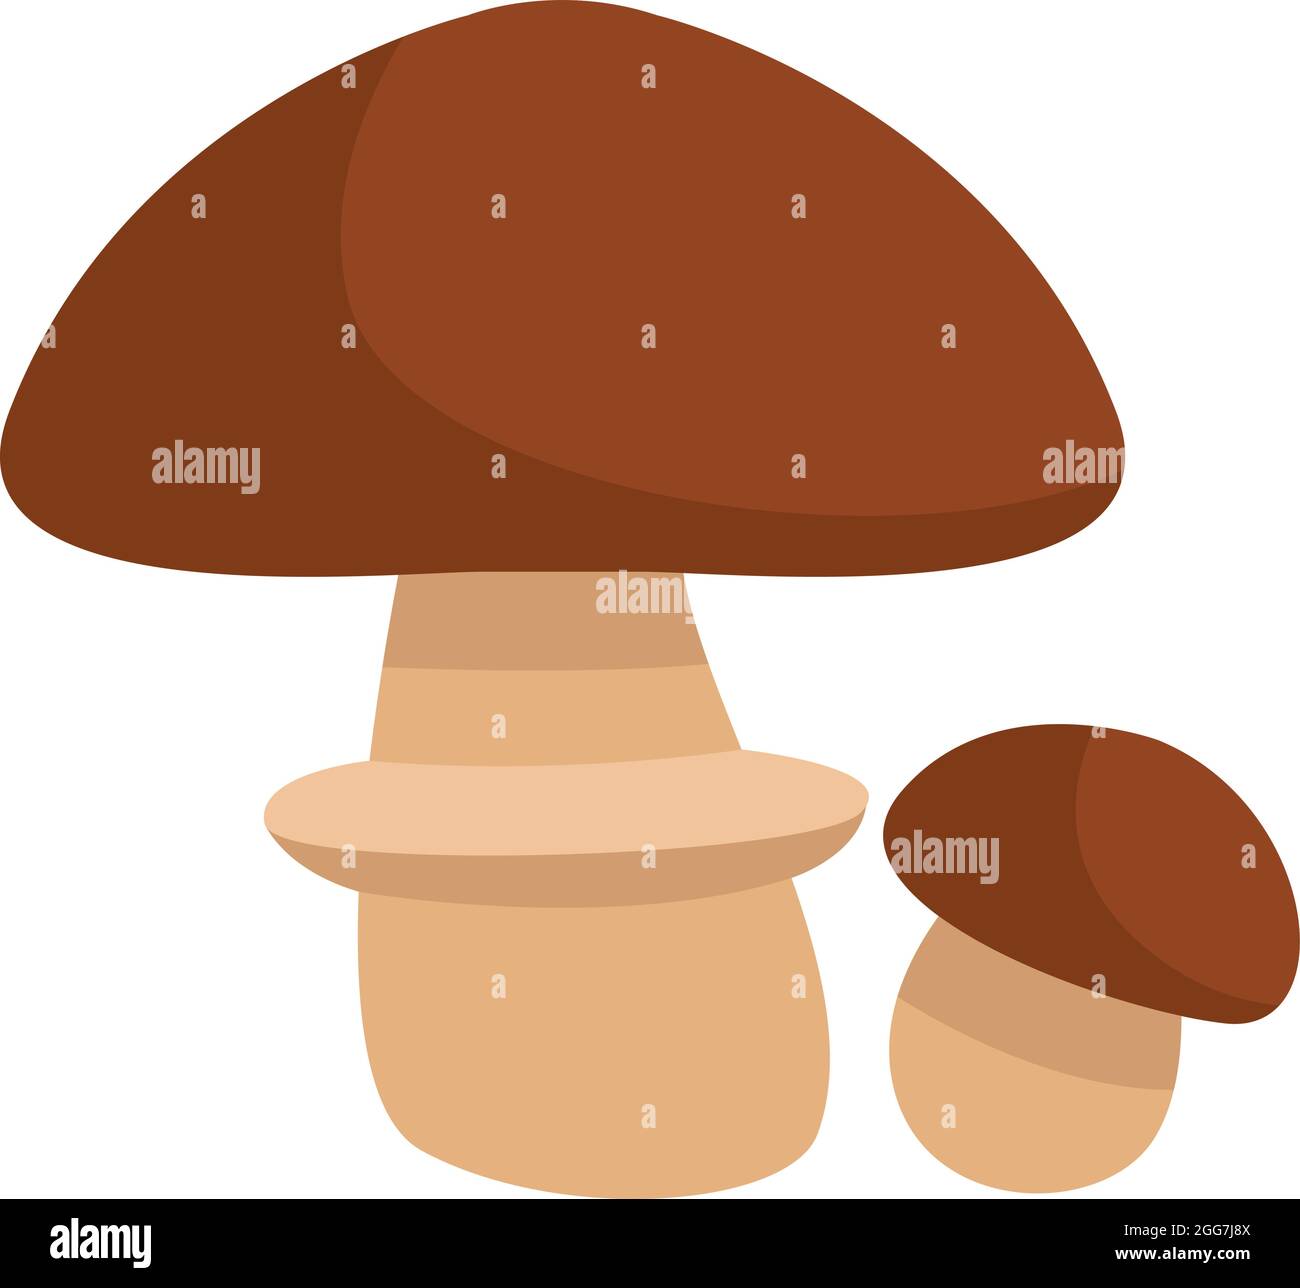 Fungo di suillus marrone, illustrazione di icone, vettore su sfondo bianco Illustrazione Vettoriale